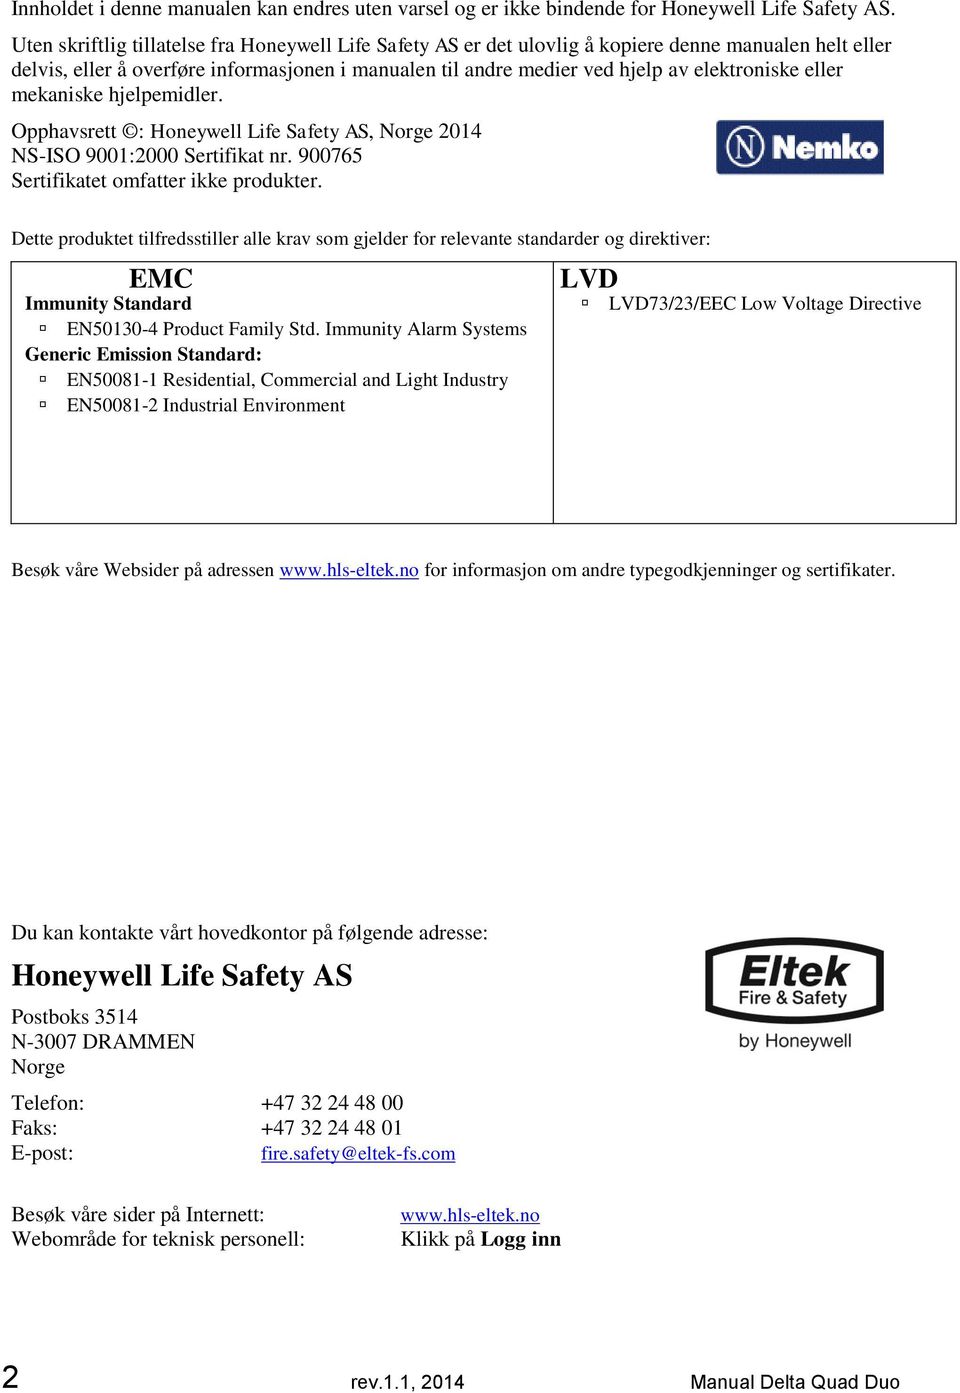 eller mekaniske hjelpemidler. Opphavsrett : Honeywell Life Safety AS, Norge 2014 NS-ISO 9001:2000 Sertifikat nr. 900765 Sertifikatet omfatter ikke produkter.